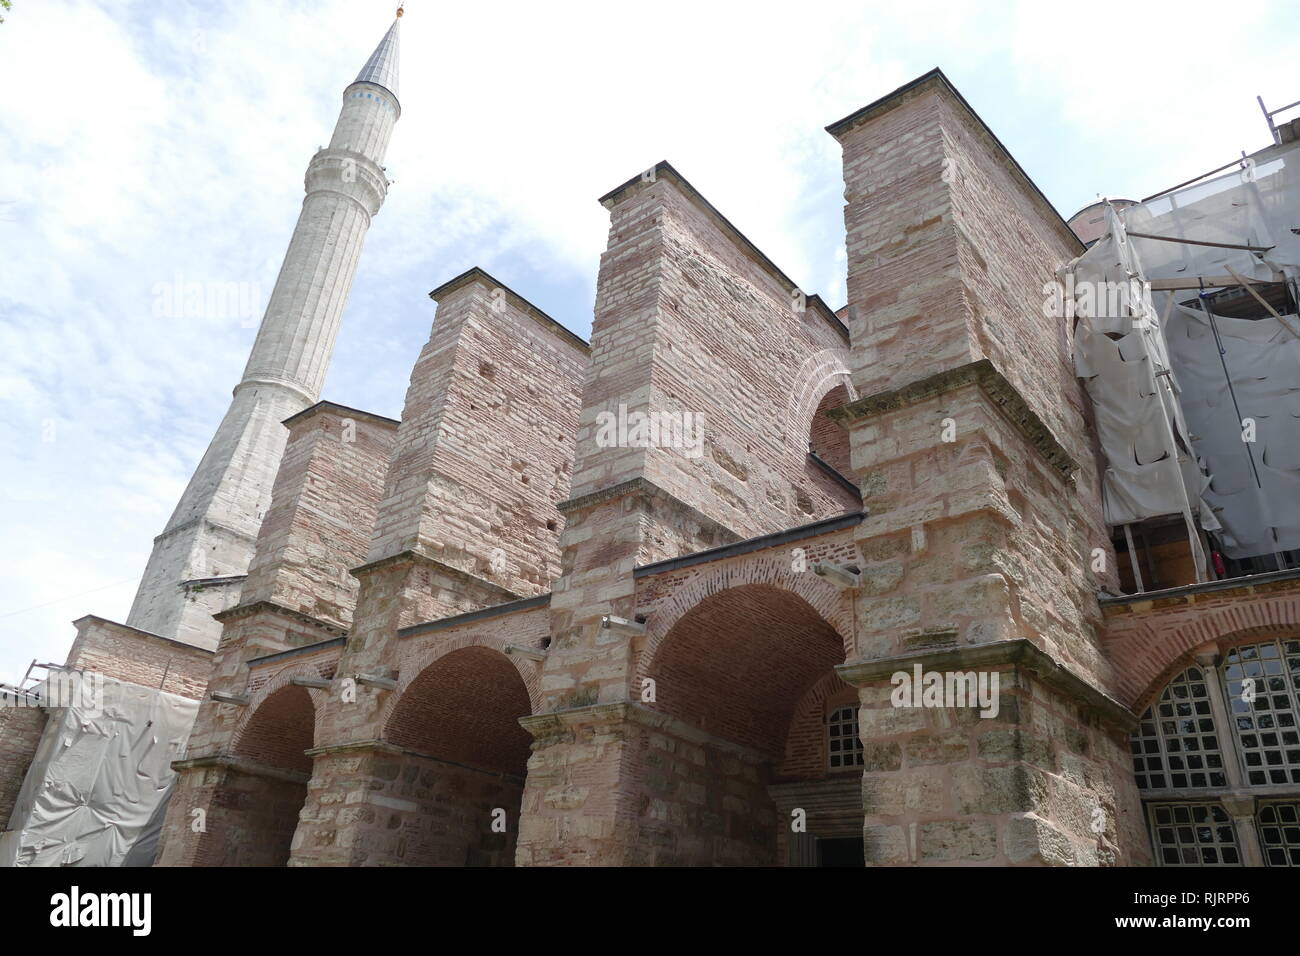 Die Hagia Sofia, Istanbul, Türkei. Die Hagia Sophia ist ein ehemaliger der griechisch-orthodoxen, der Christlichen Kirche, später ein Ottoman Imperial Moschee und jetzt ein Museum. In 537 AD am Anfang des Mittelalters erbaut, wurde es berühmt vor allem für seine mächtige Kuppel. Es war das zweitgrößte Gebäude der Welt und eine Technik, die ihrer Zeit bewundern. Stockfoto